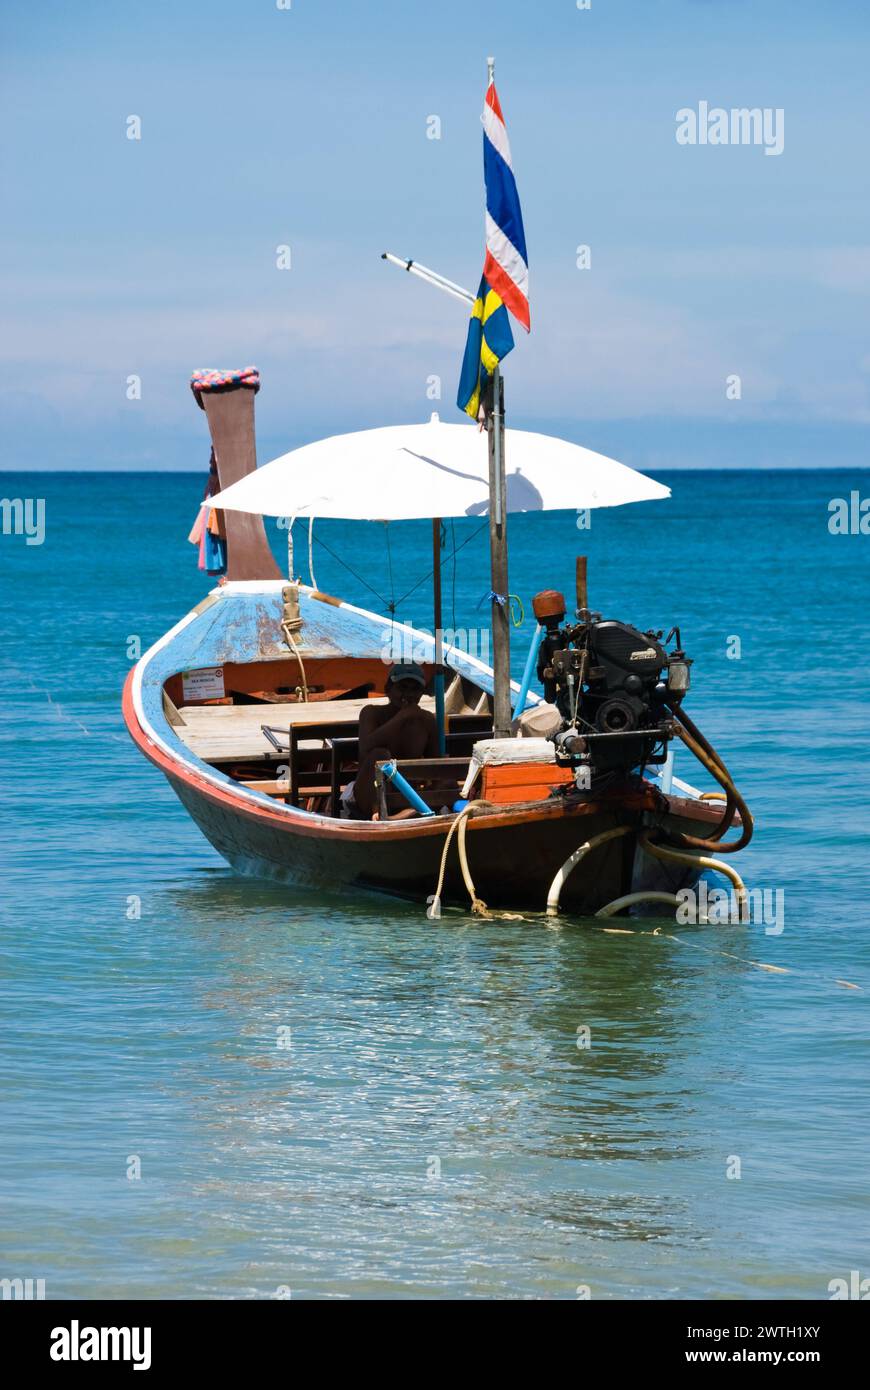 Un petit bateau navigue par une journée ensoleillée à Phuket, en Thaïlande Banque D'Images